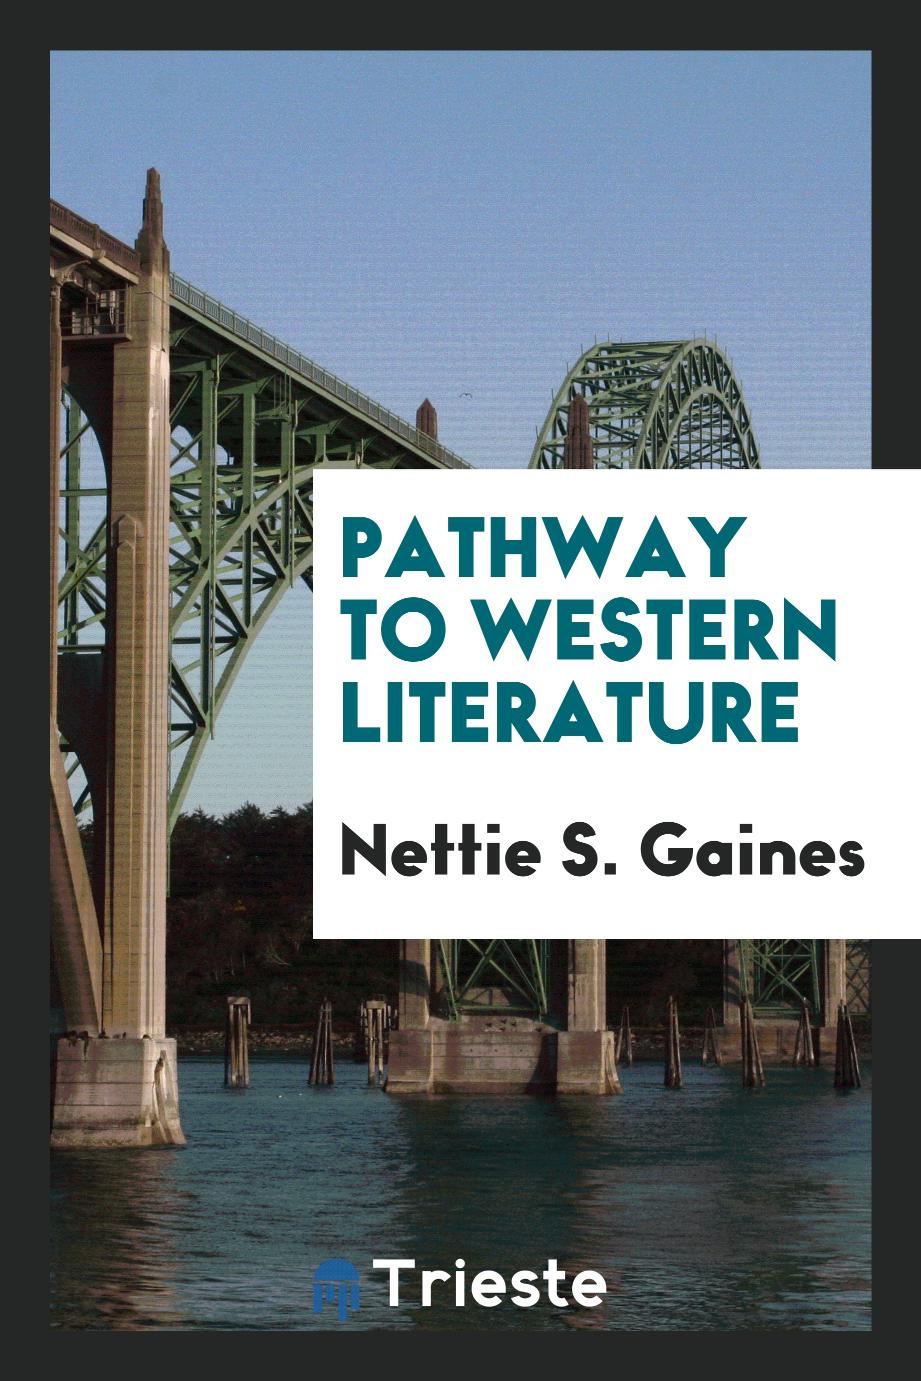 Pathway to western literature